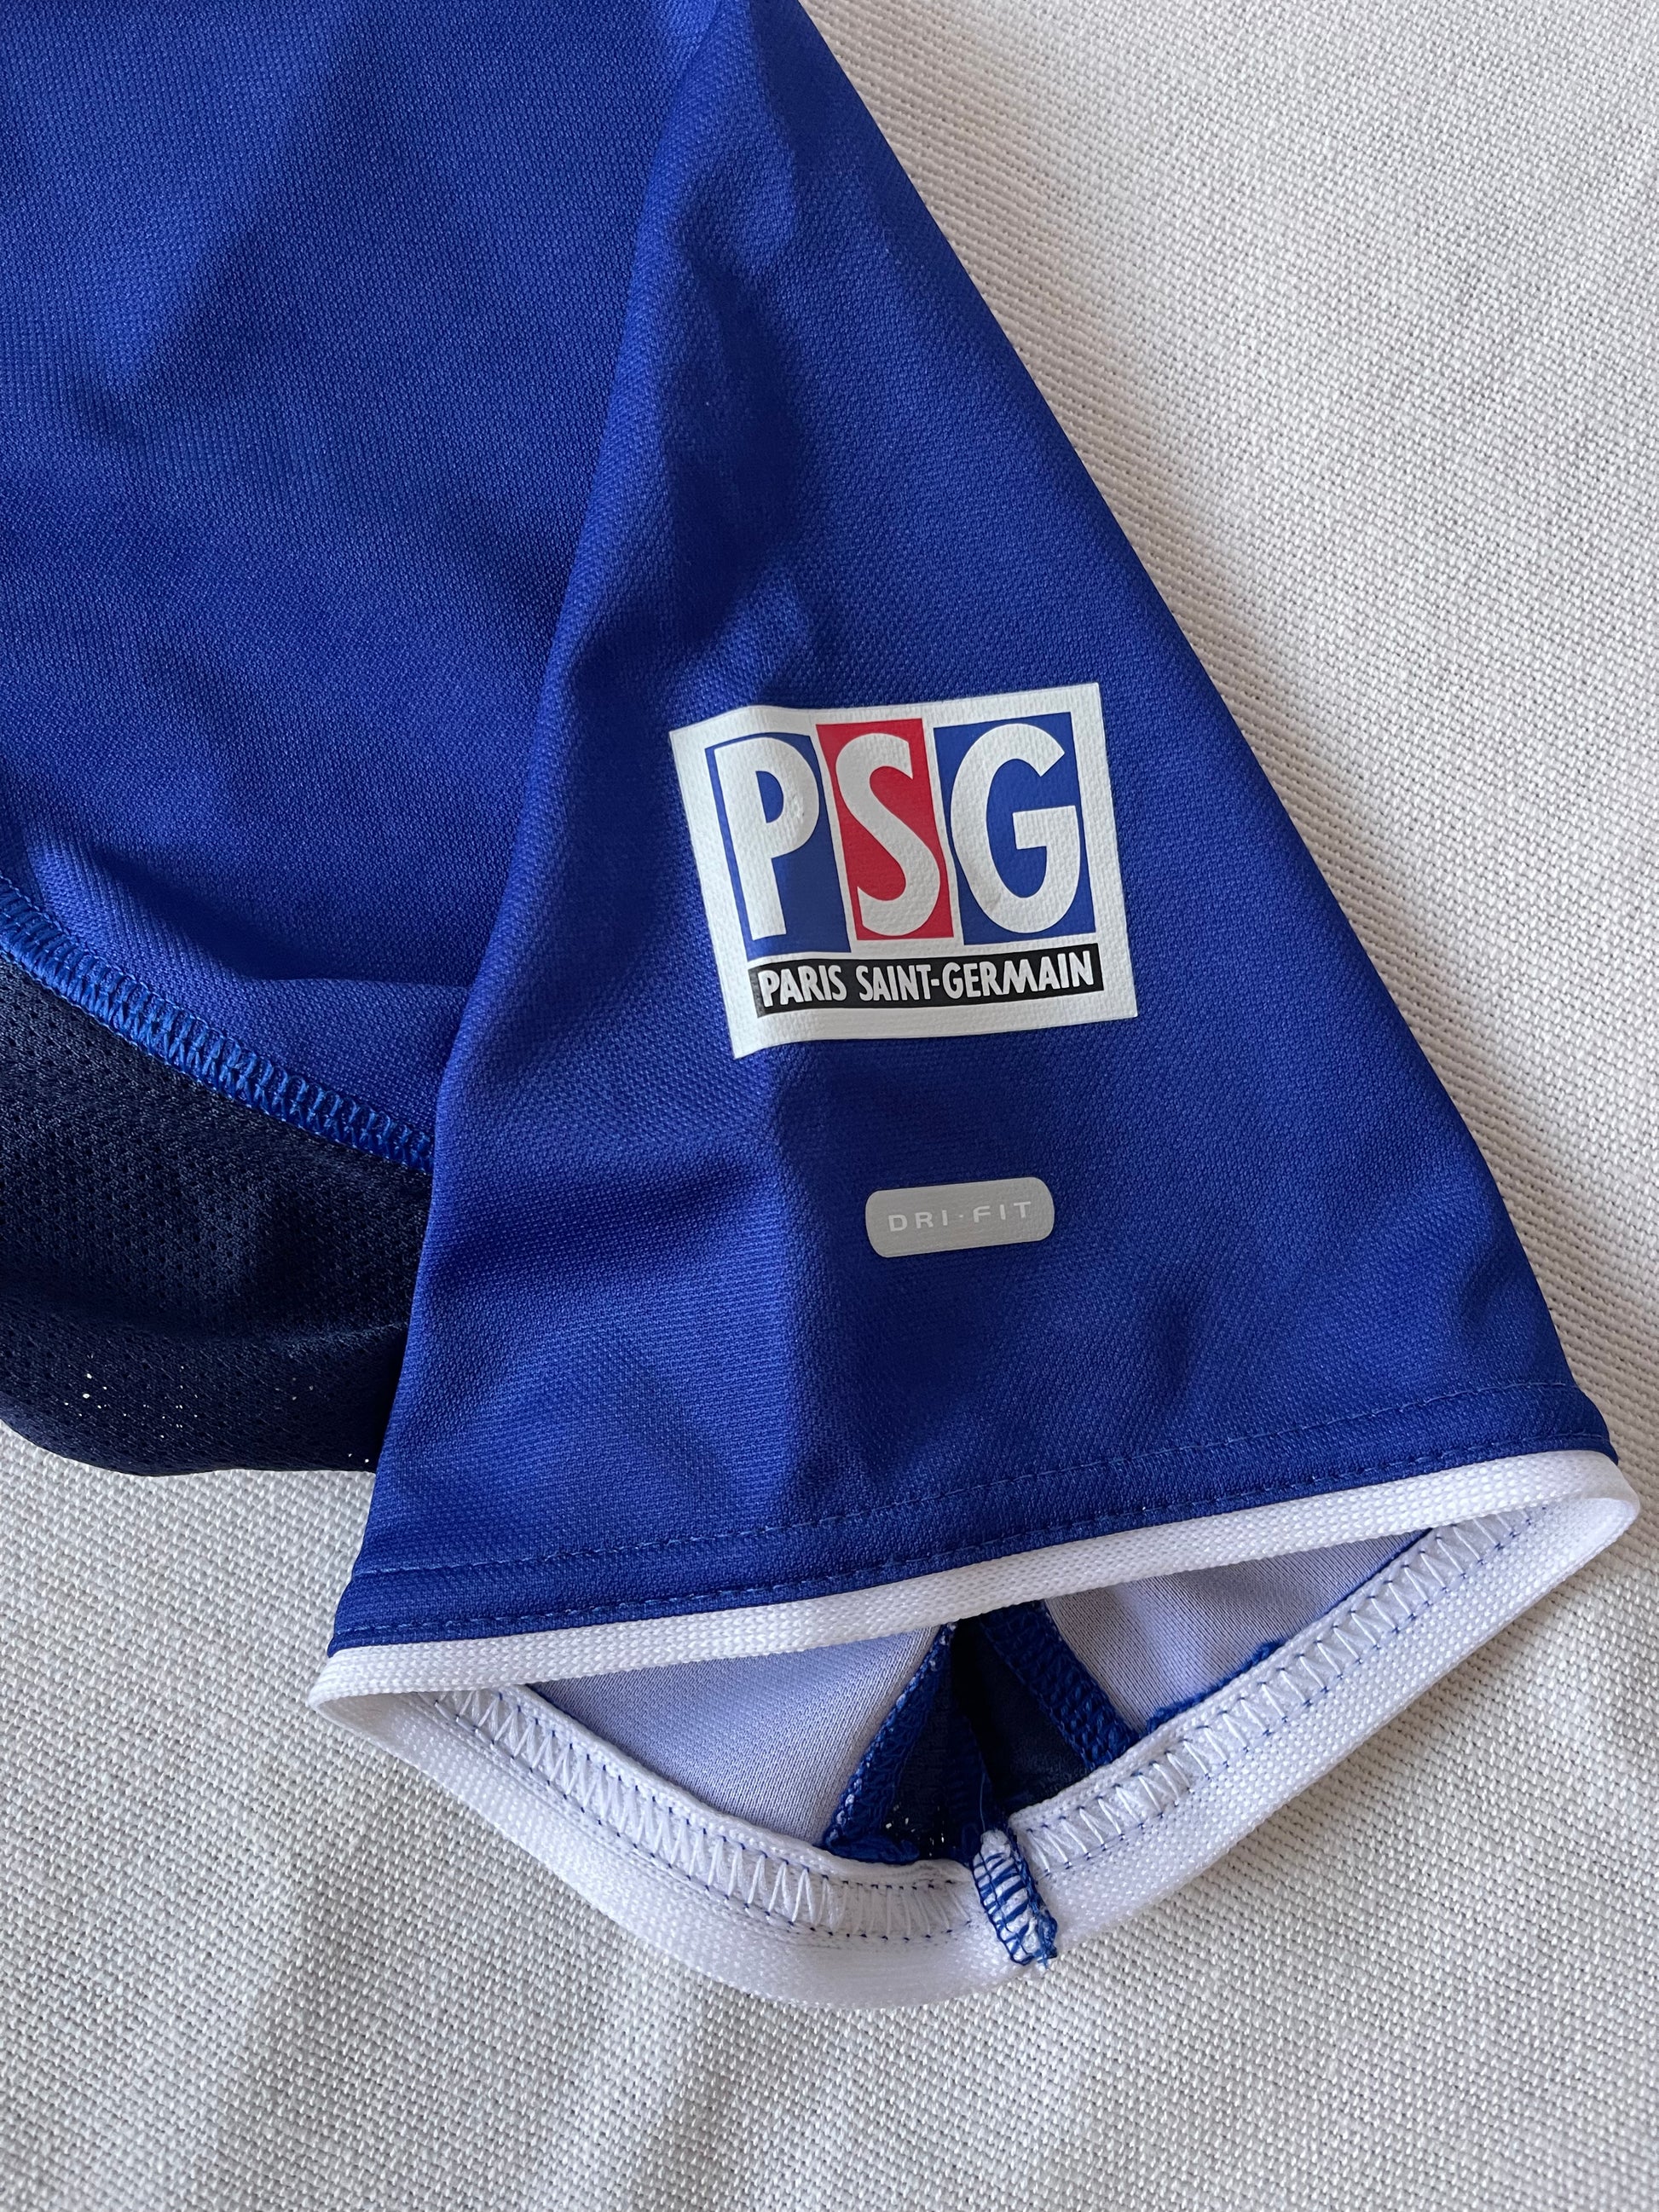 Gourde PSG vintage - 1998